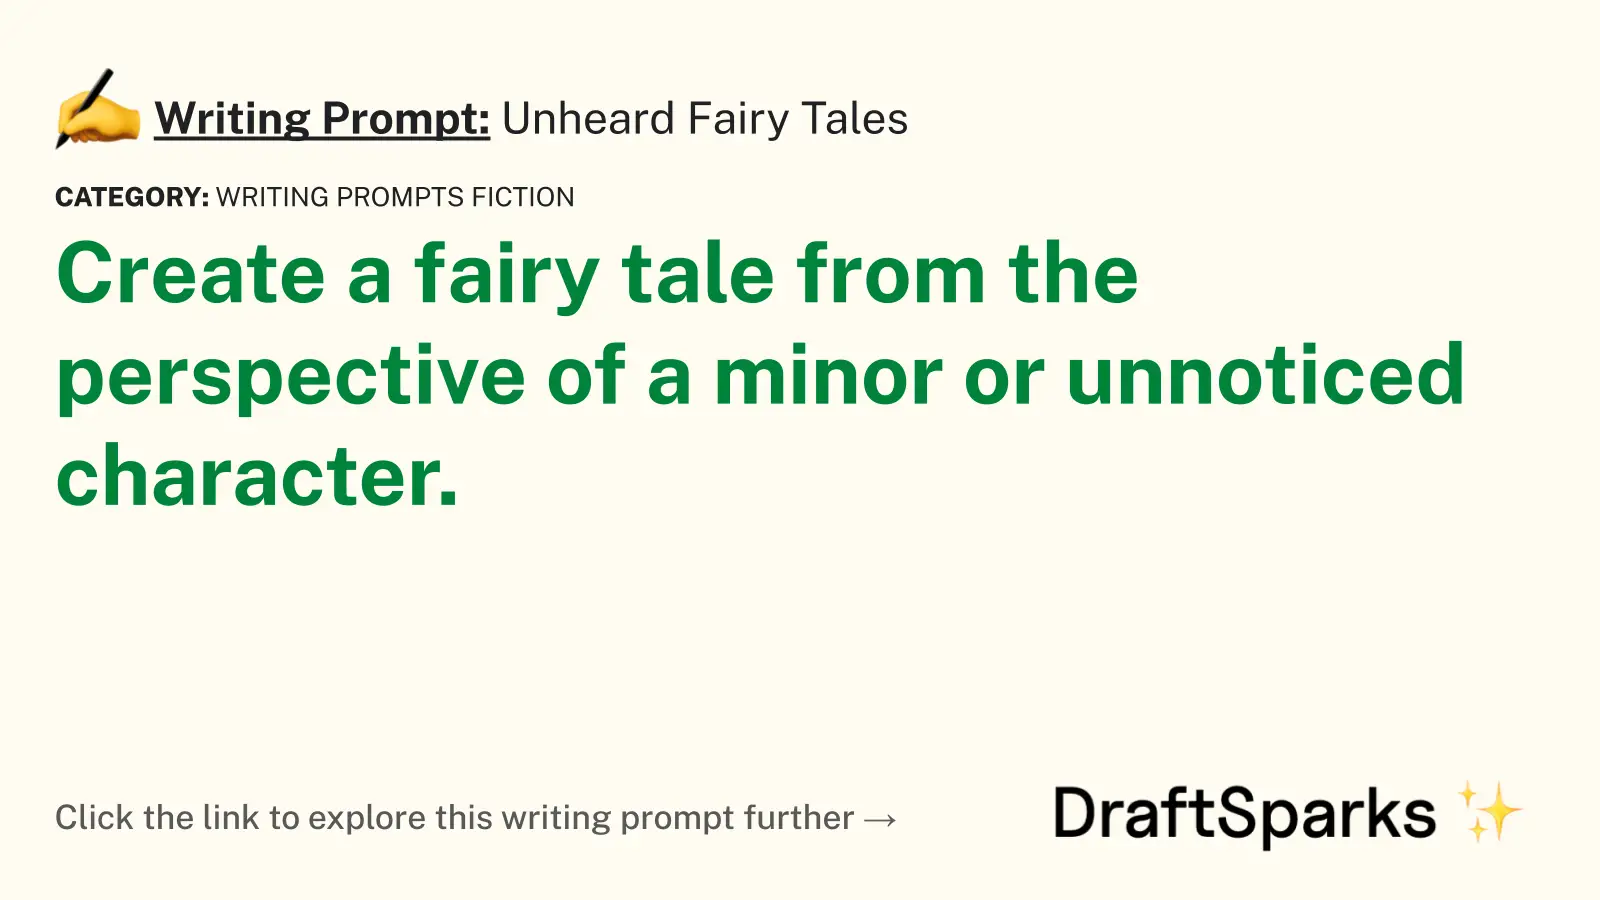 Unheard Fairy Tales